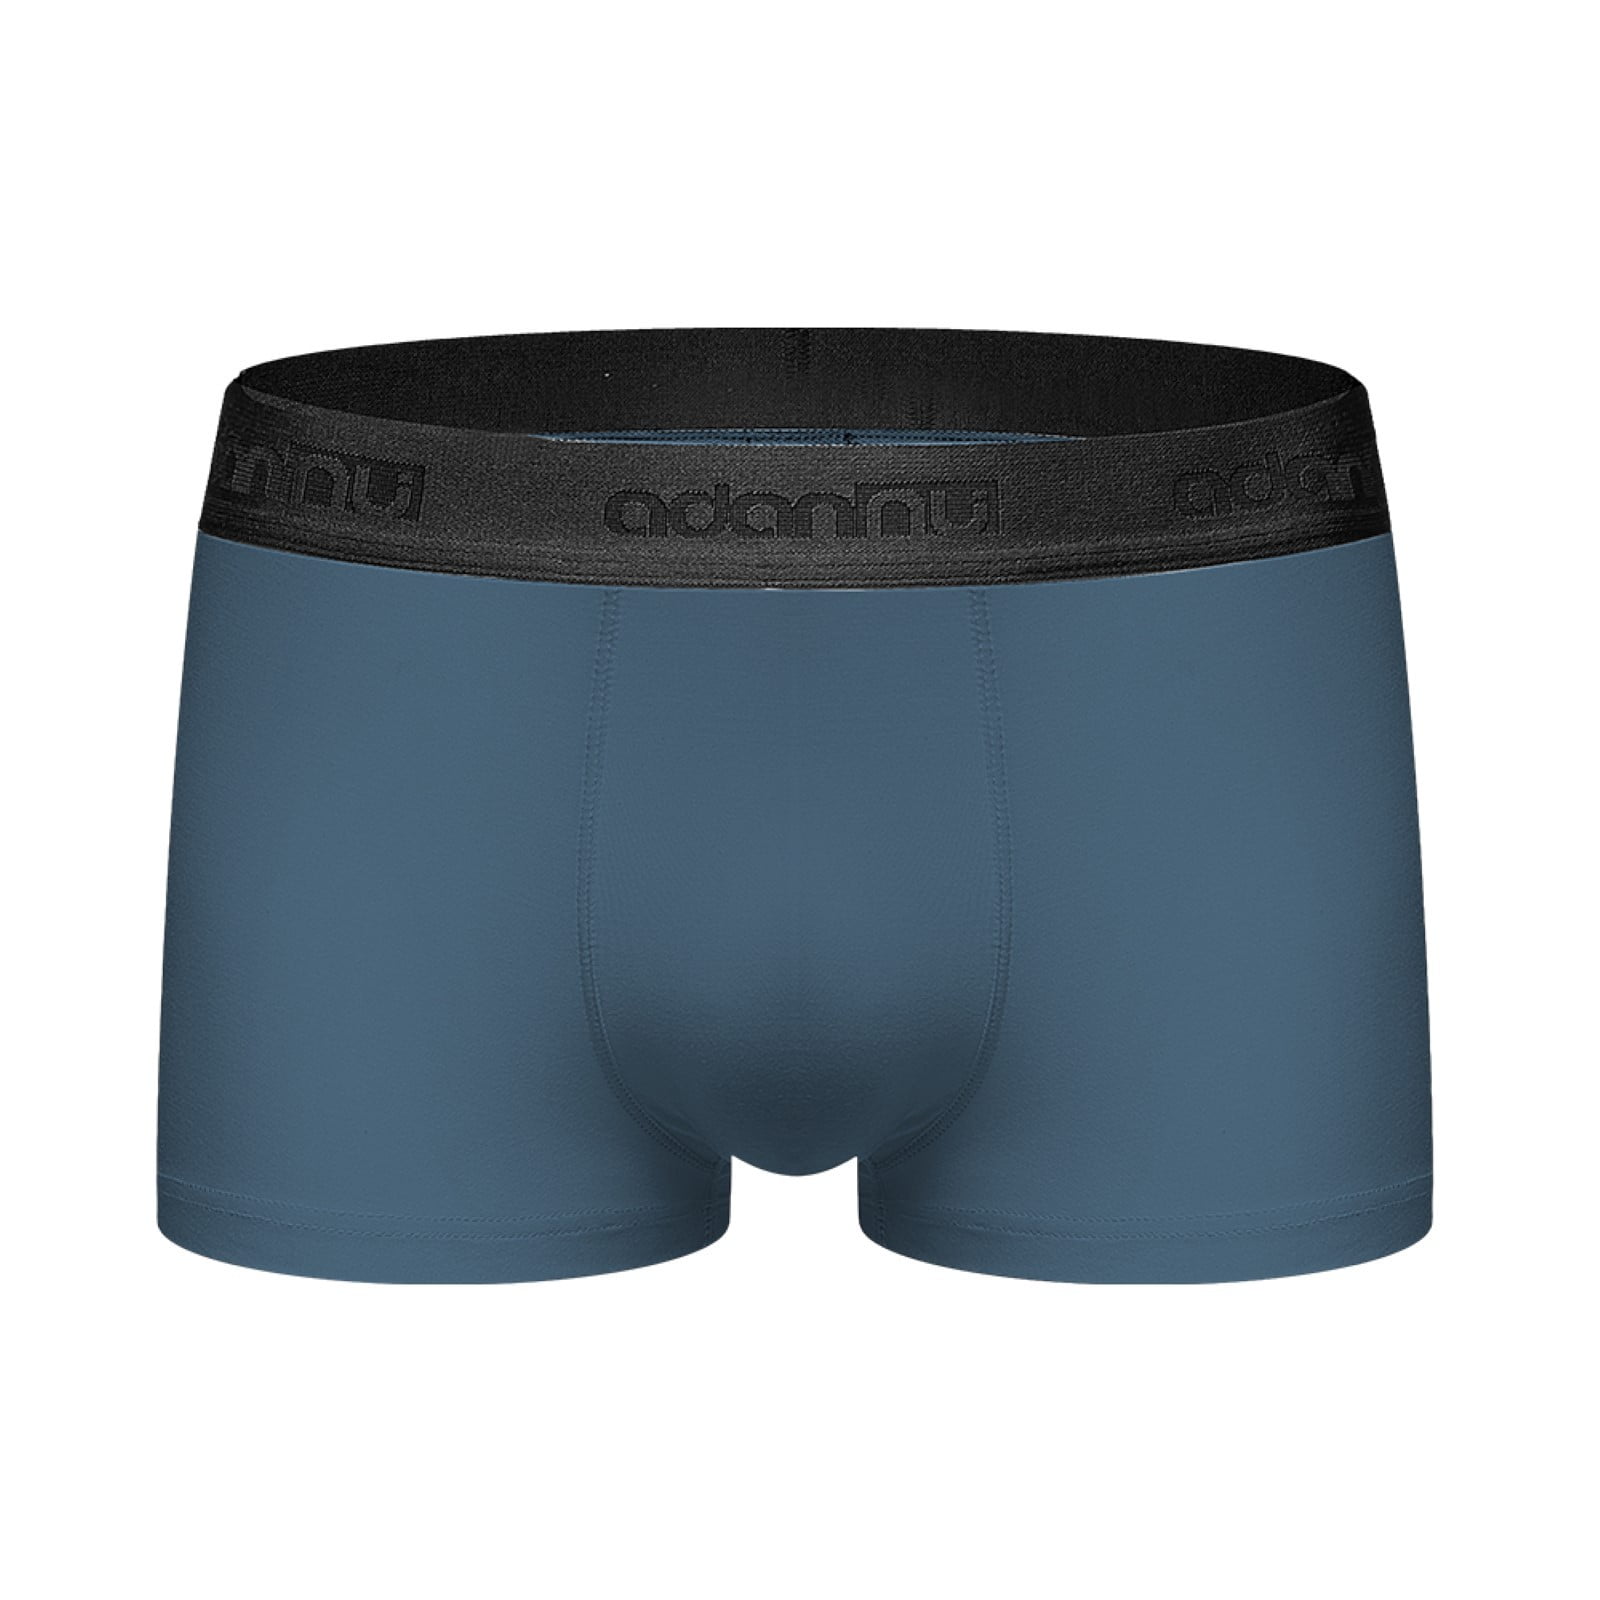 CAICJ98 Mens Underwear Men's Stretch Underwear Support Briefs Wide Waistband Multipack Blue,L -